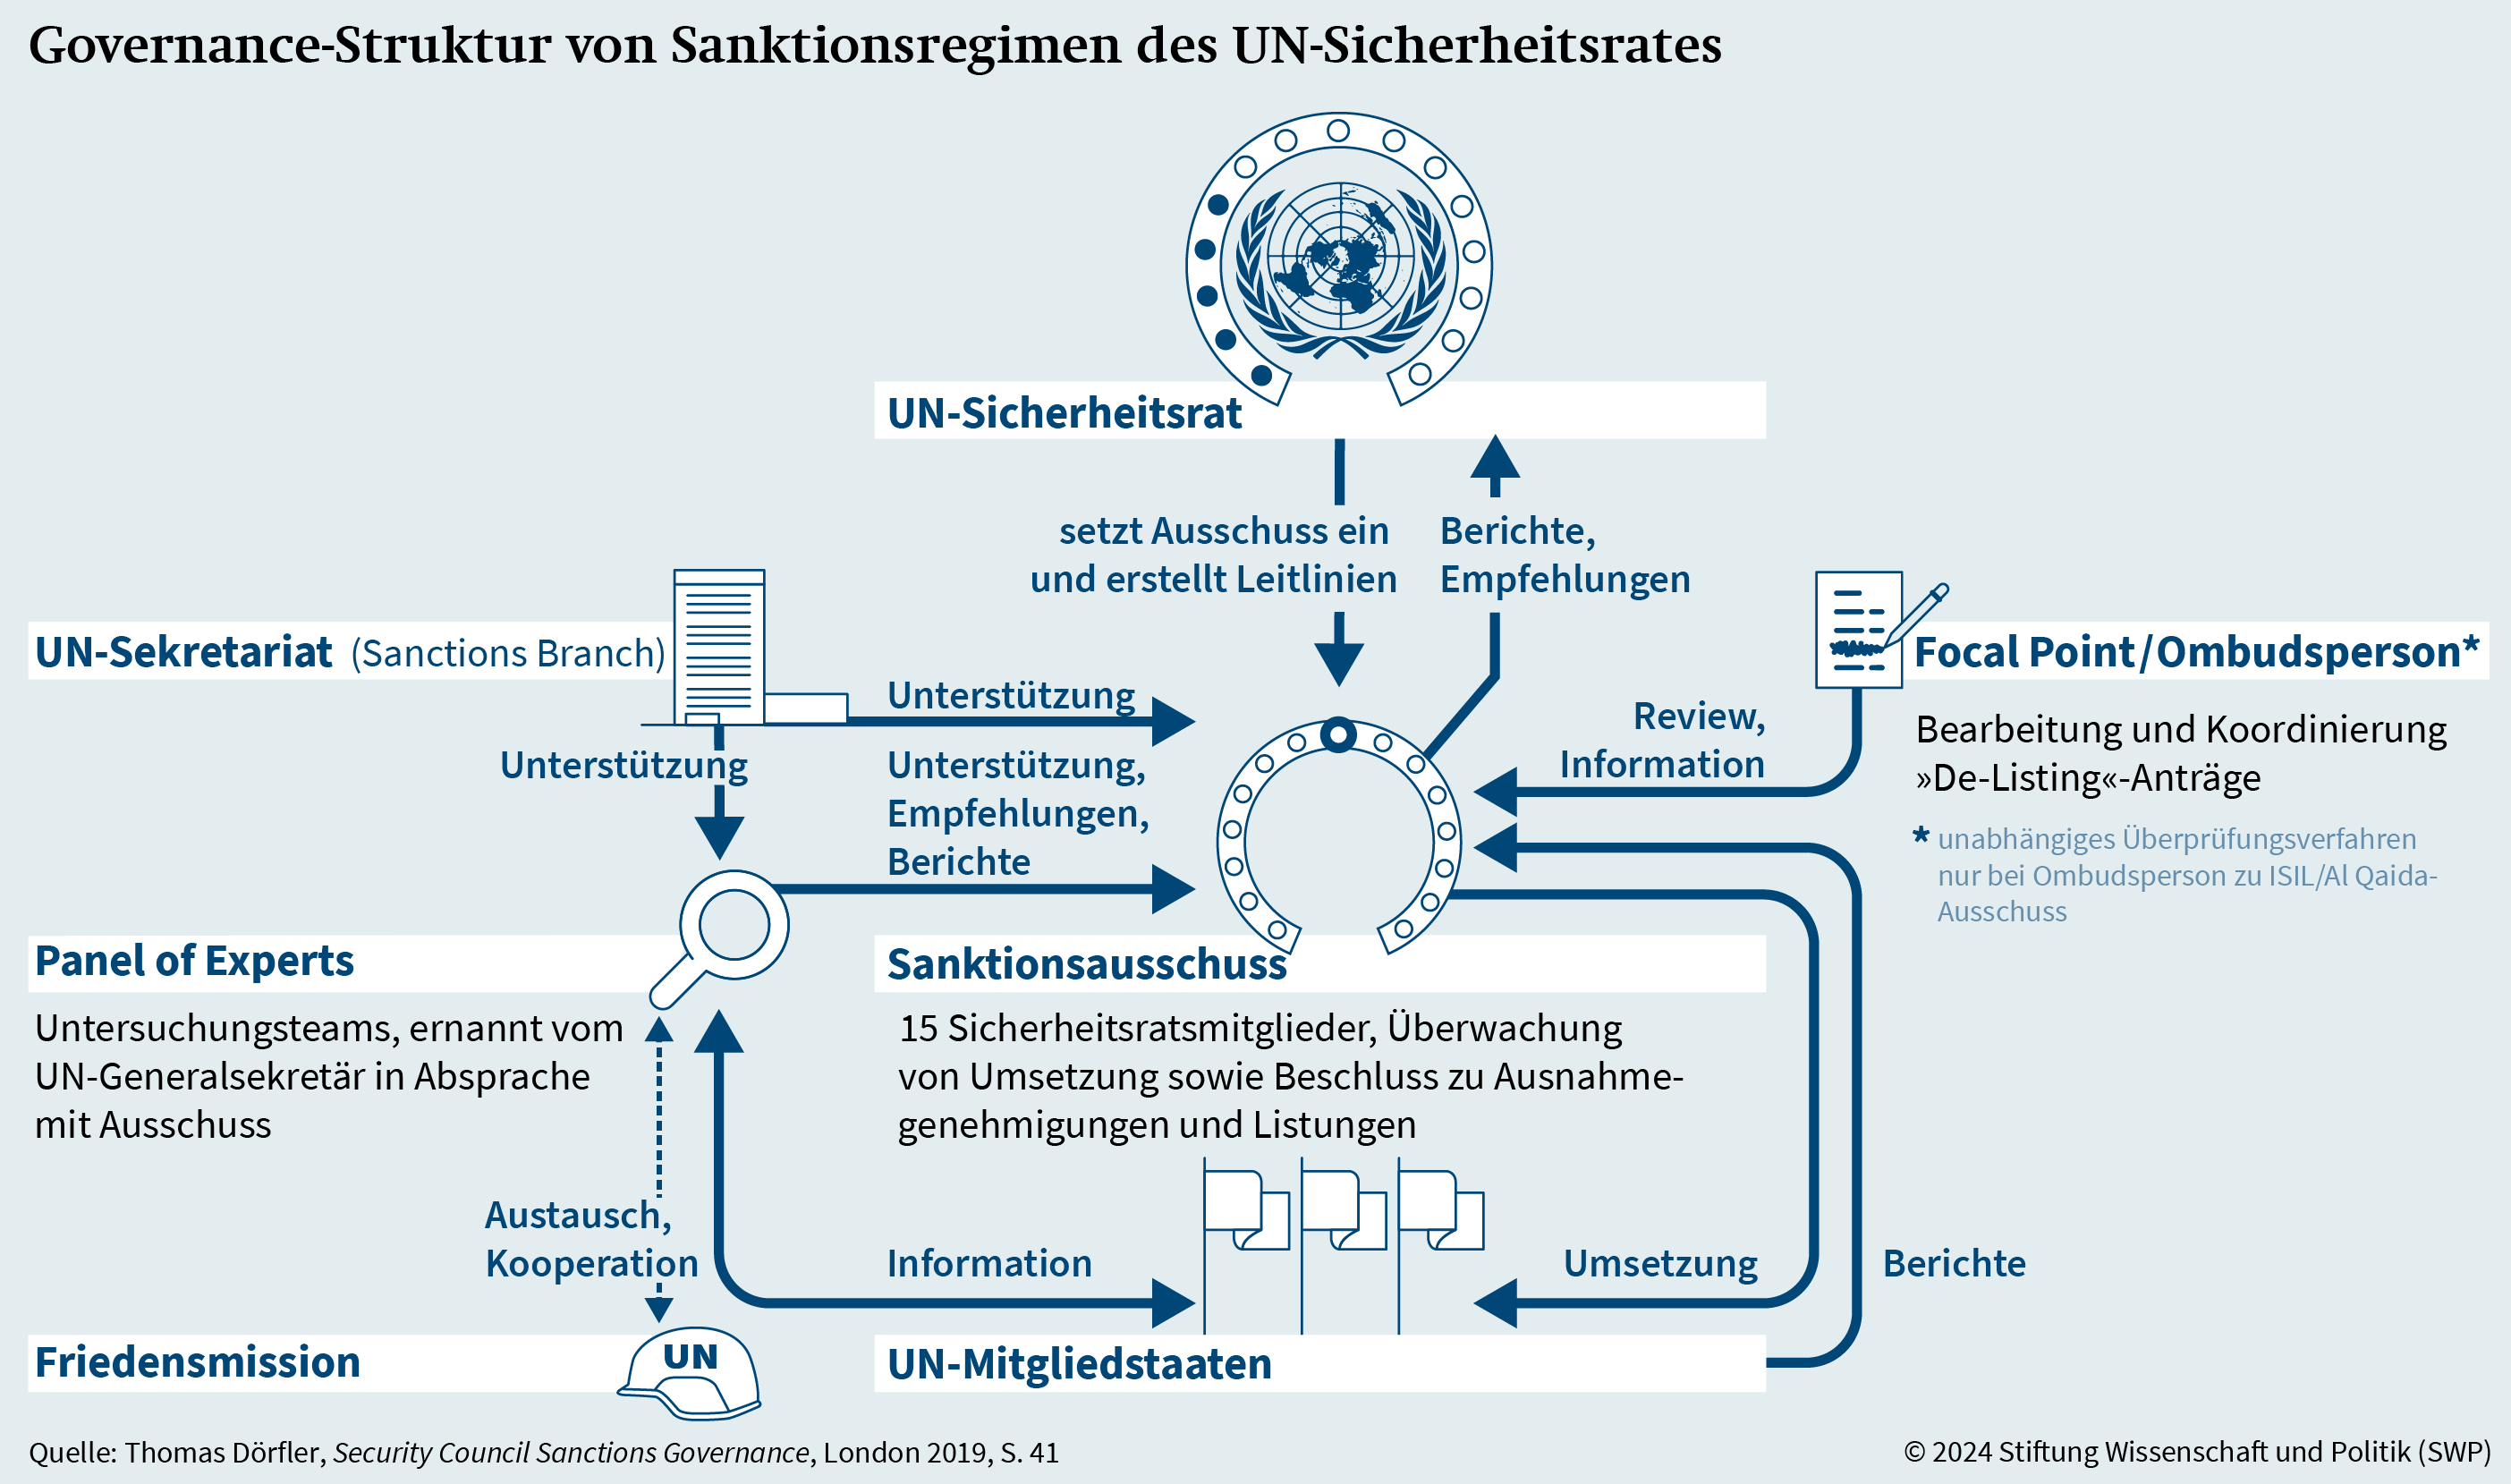 Graphik 2: Governance-Struktur von Sanktionsregimen des UN-Sicherheitsrates